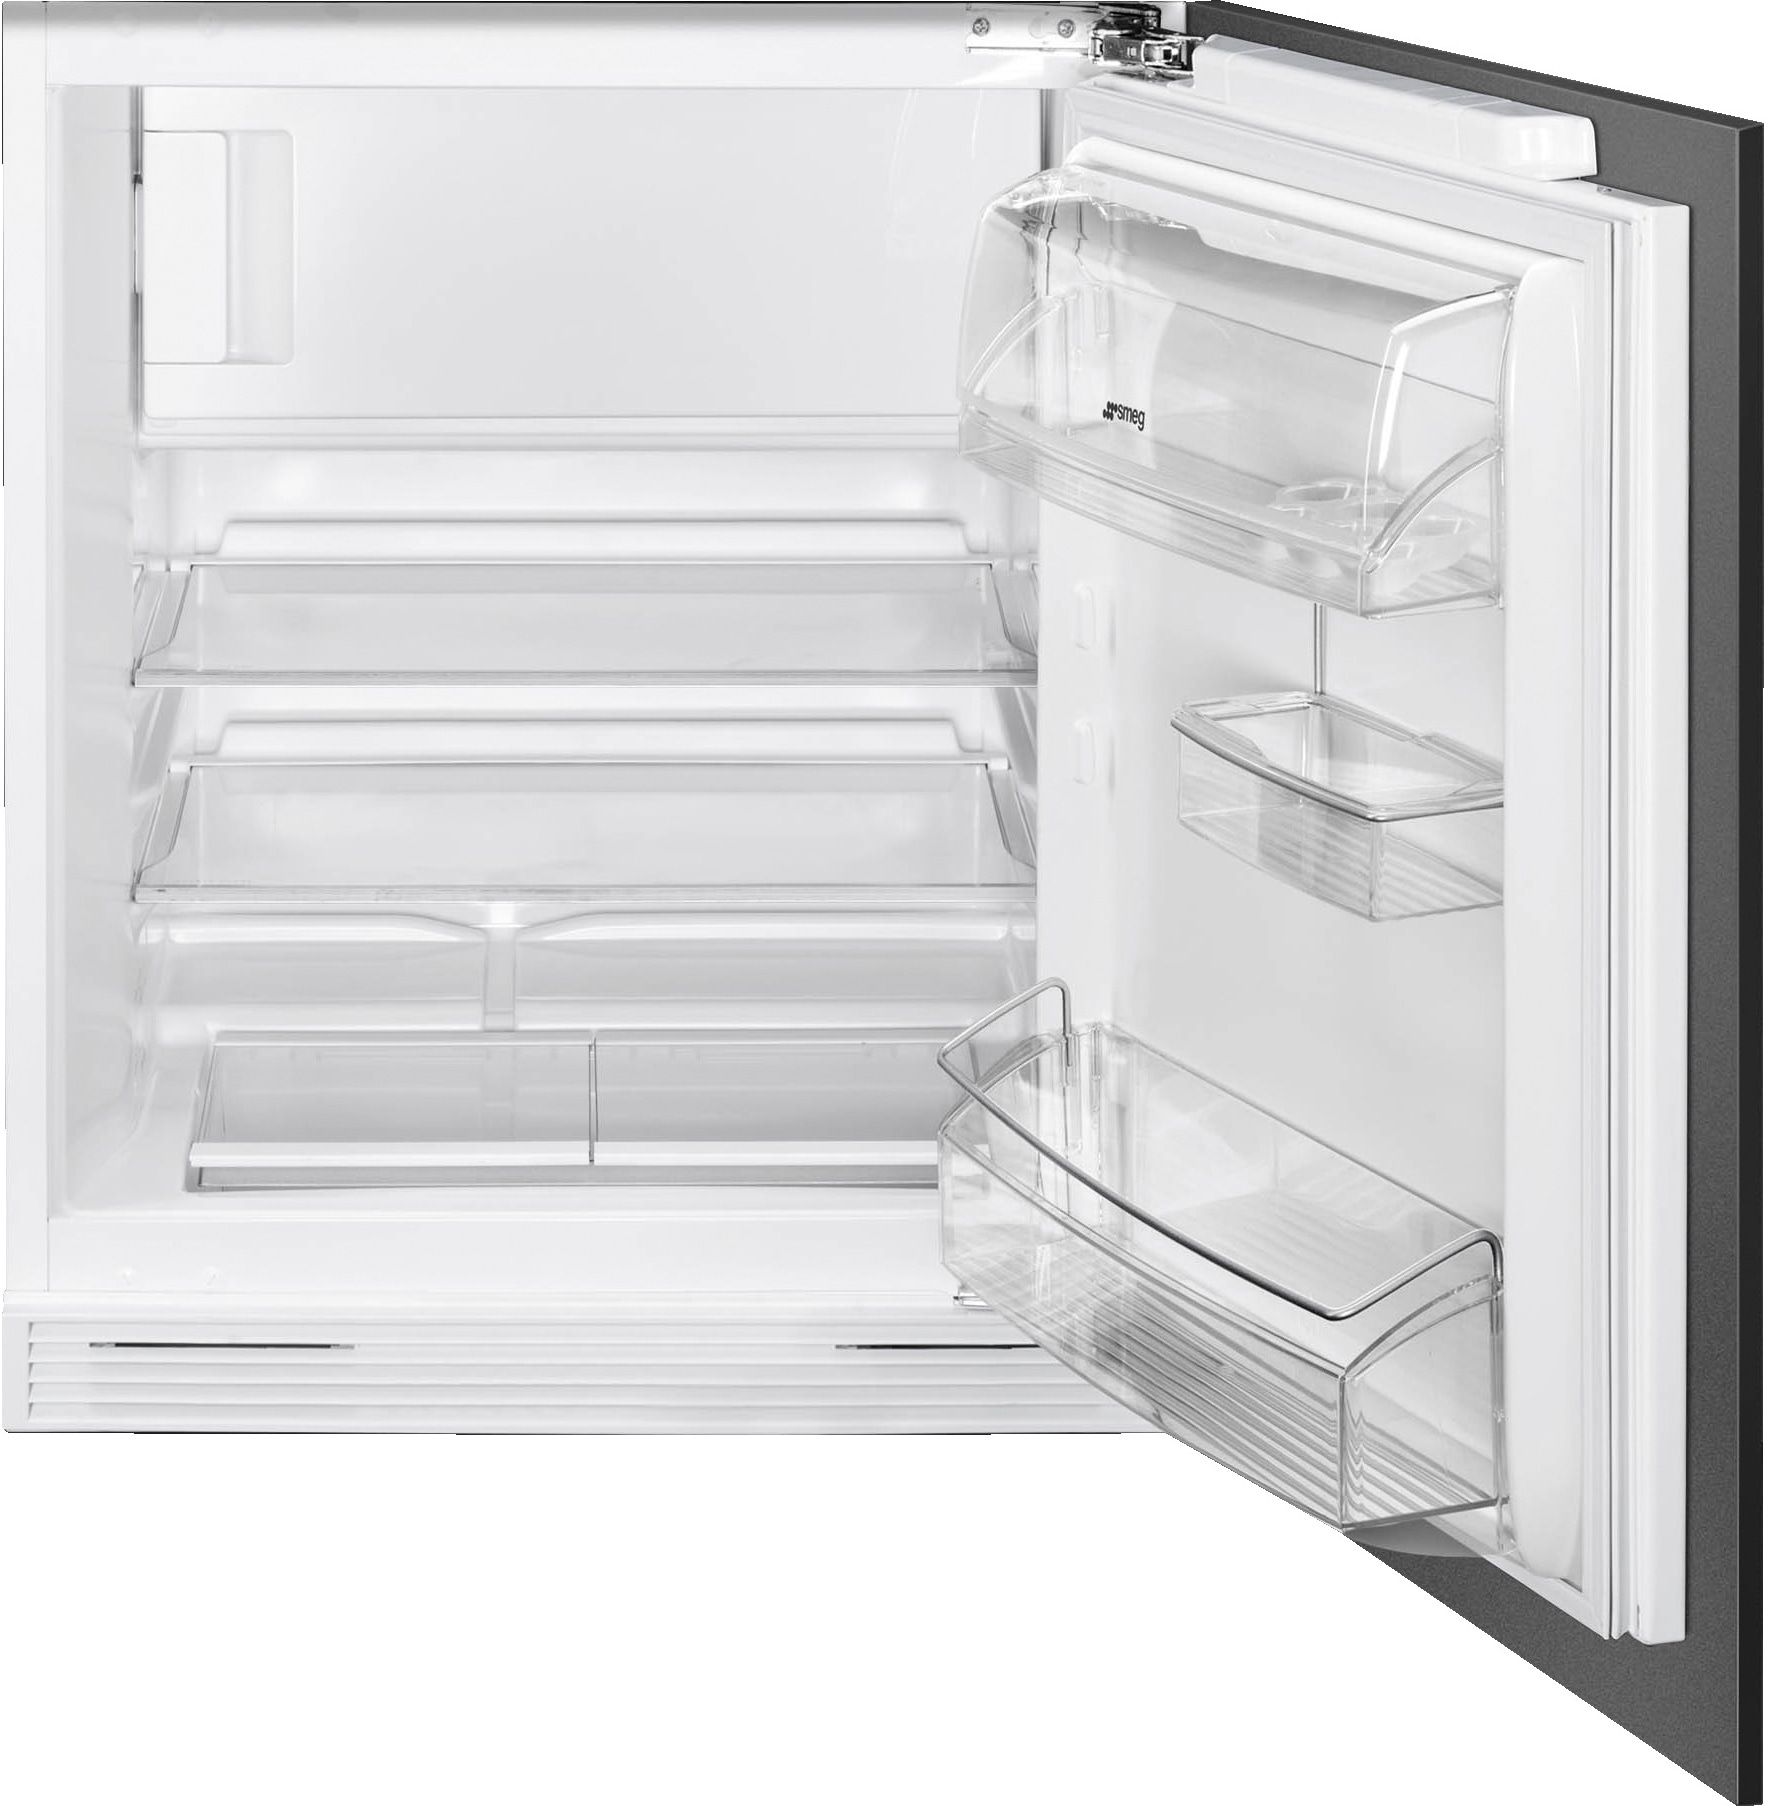 Smeg kjøleskap med fryser U8C082DF innebygd - Elkjøp